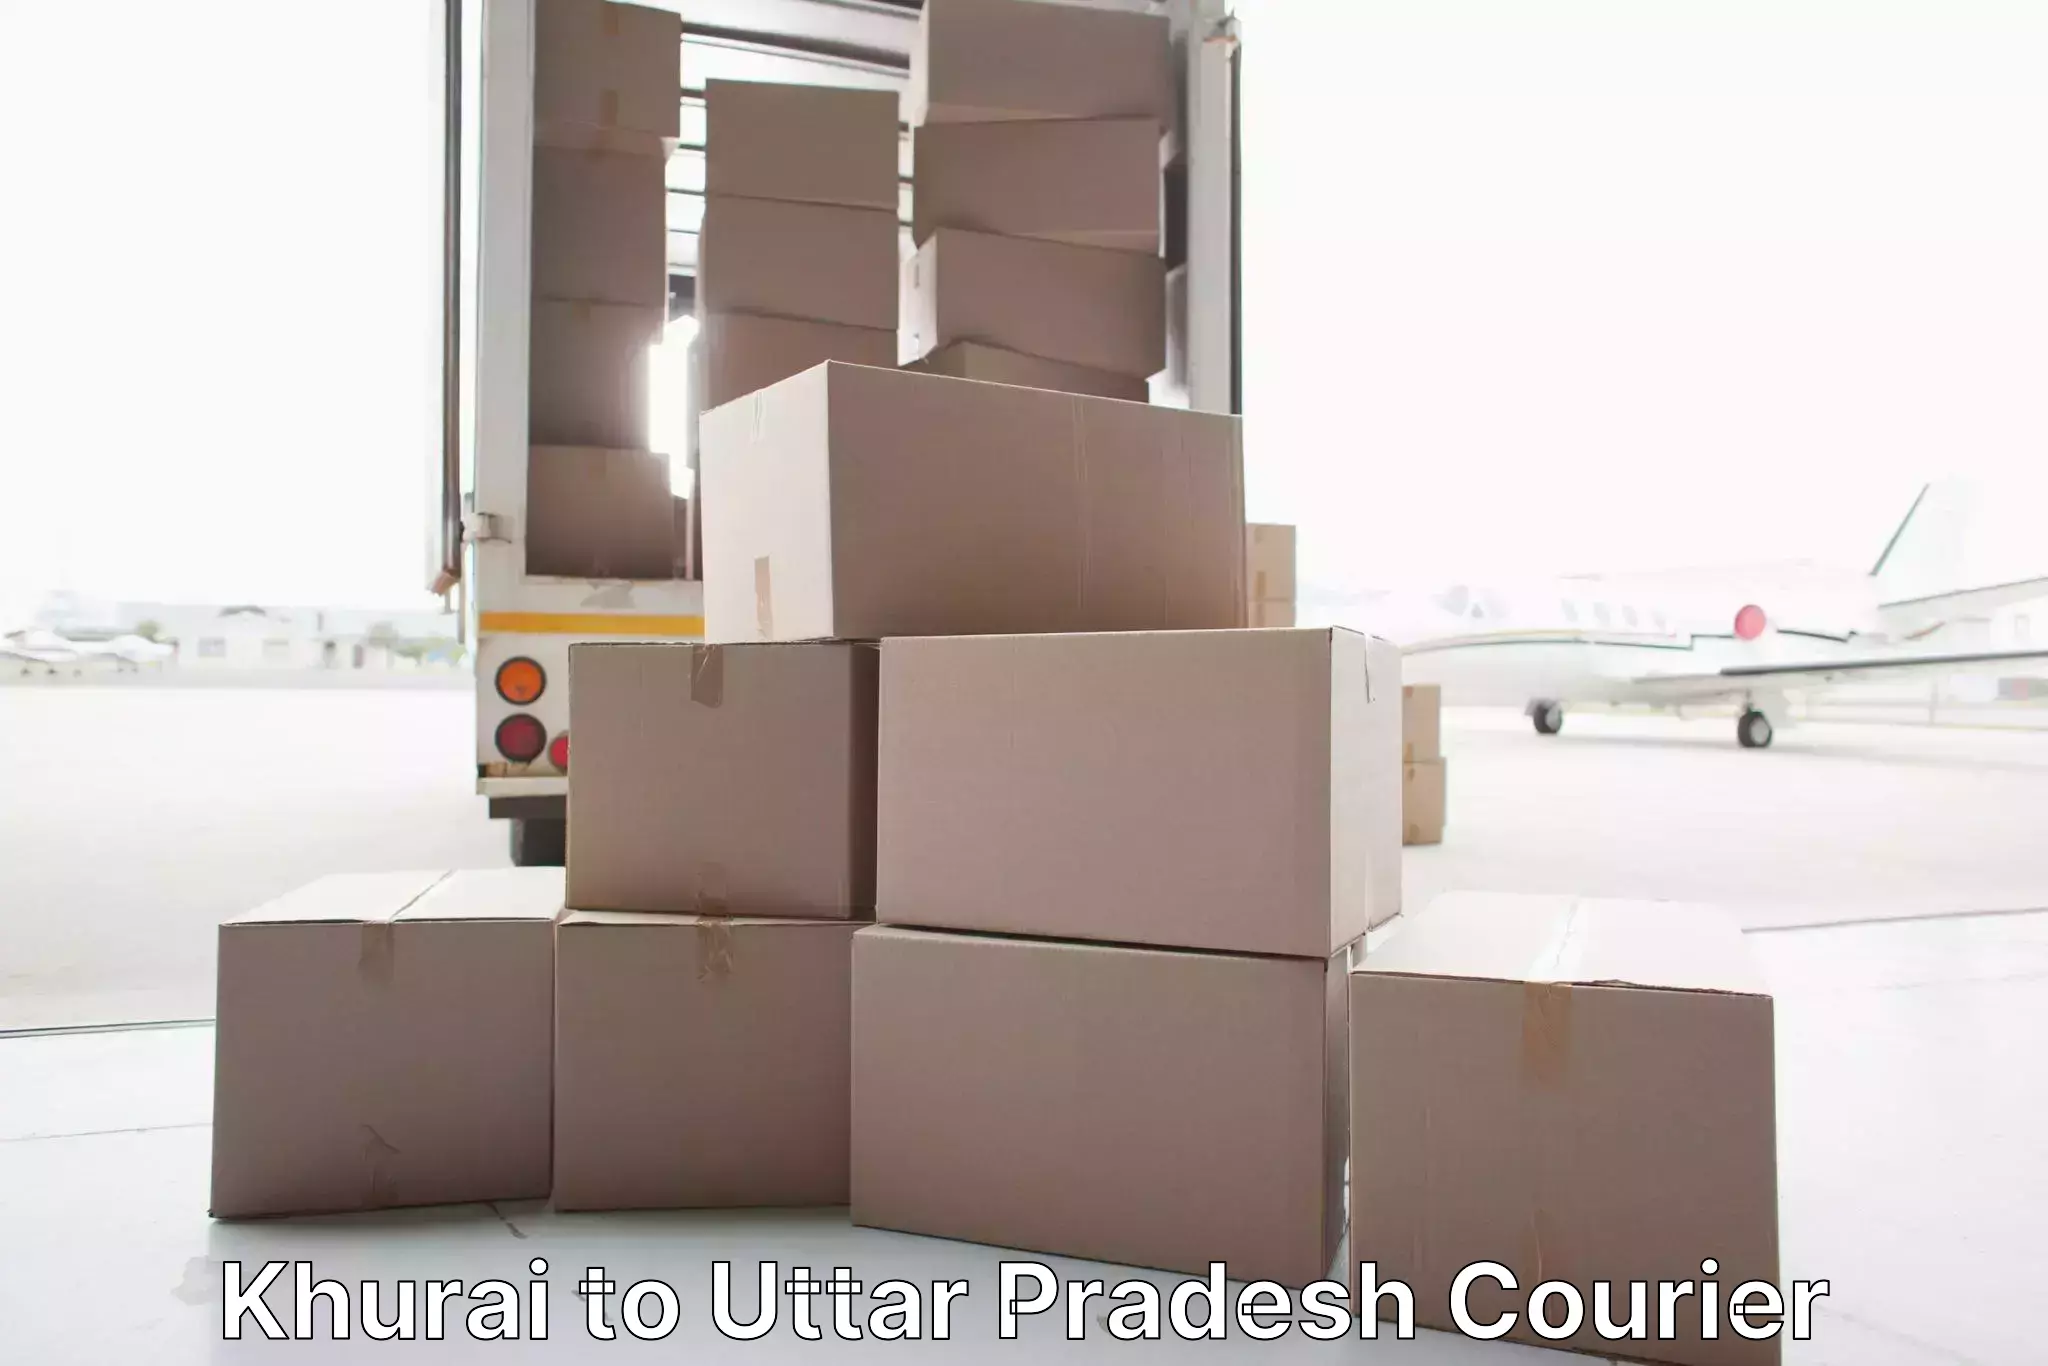 Home moving experts Khurai to Orai